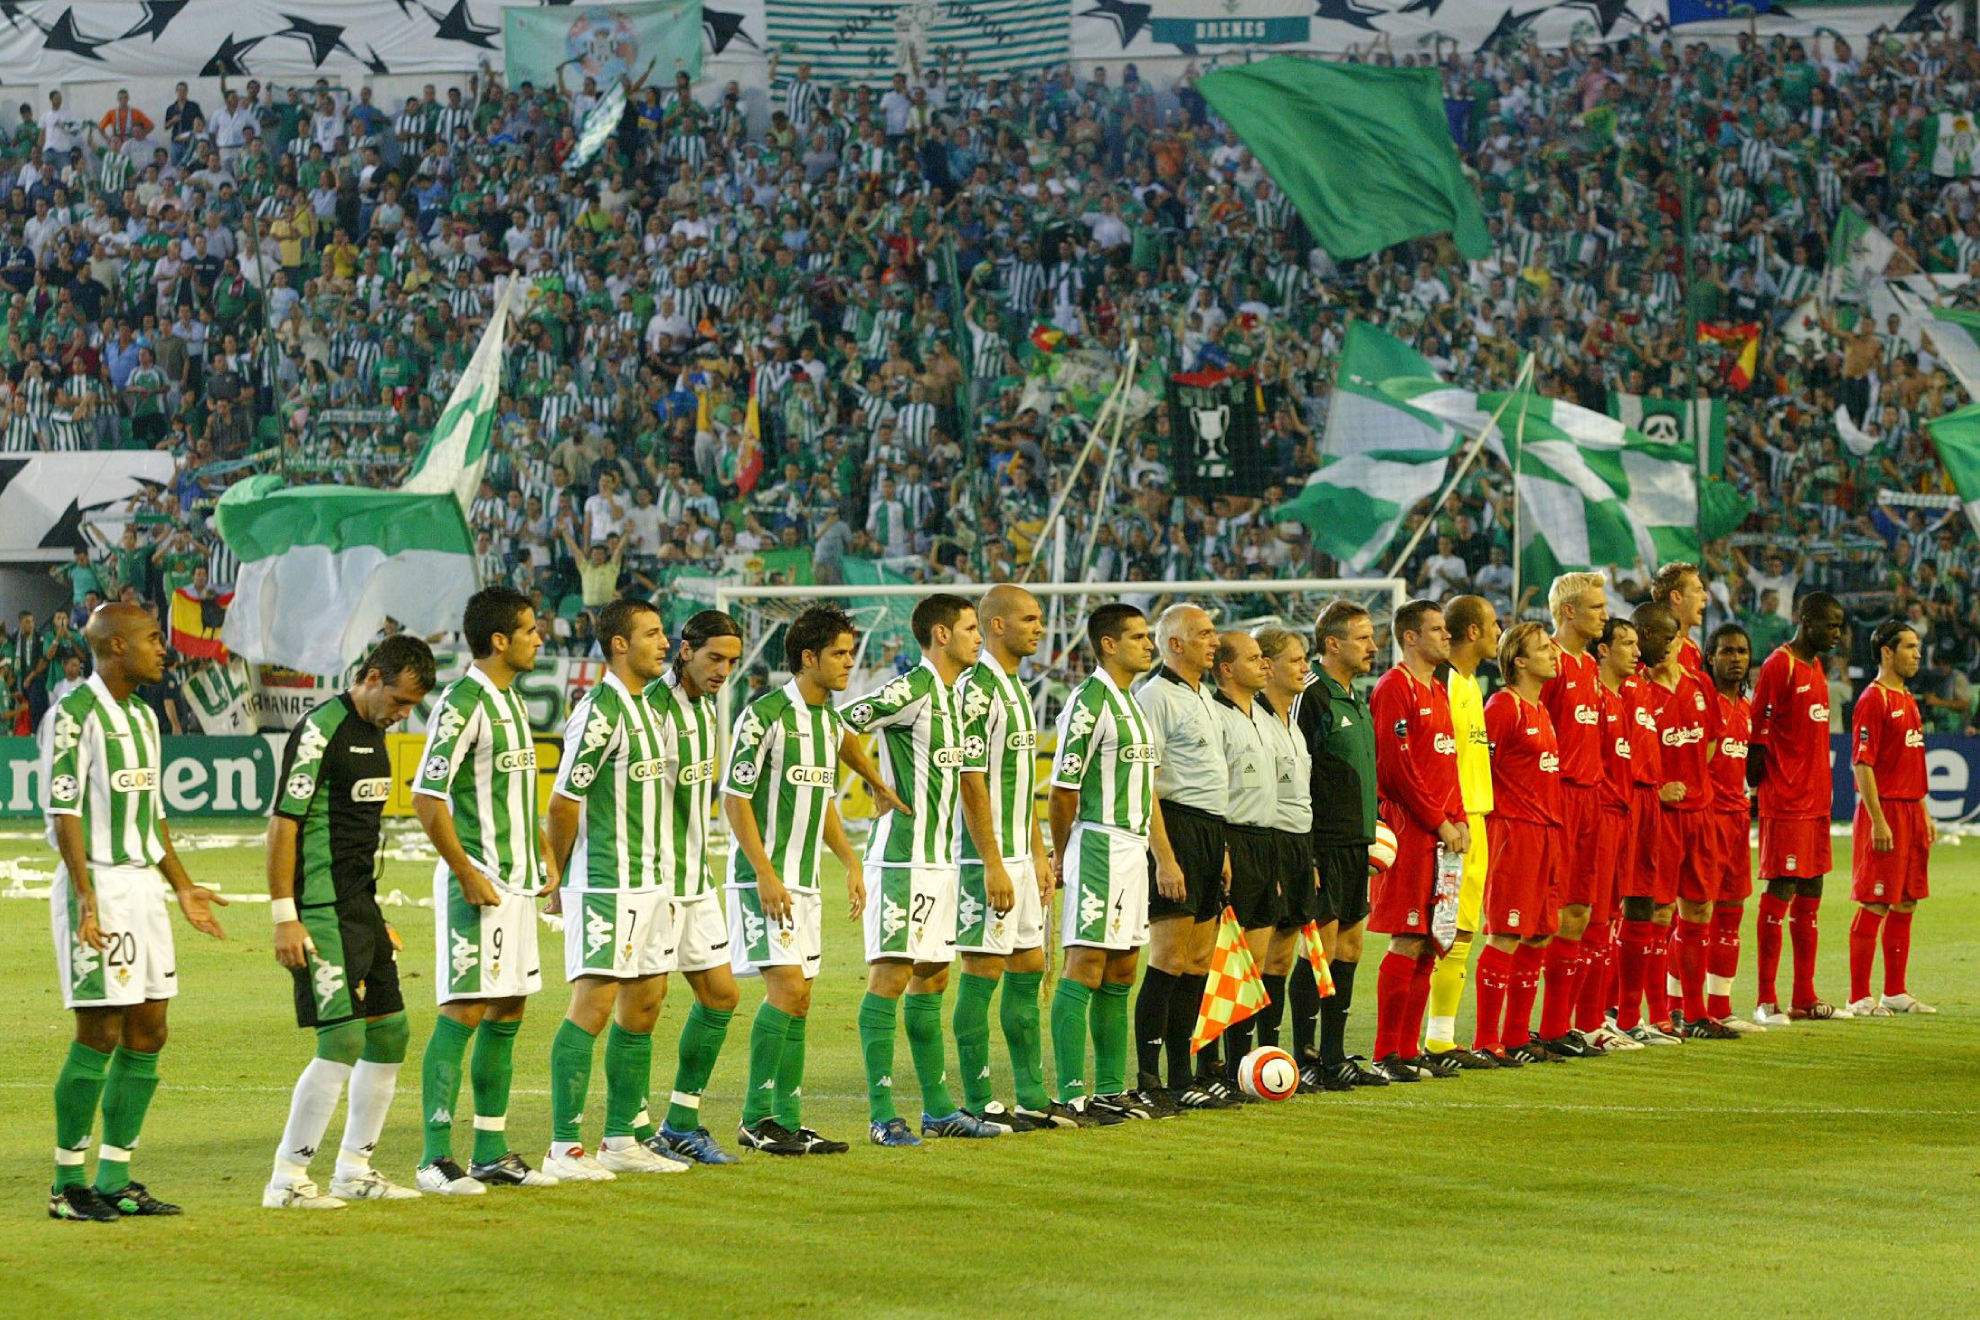 Partido de Champions entre Liverpool y Betis en 2005